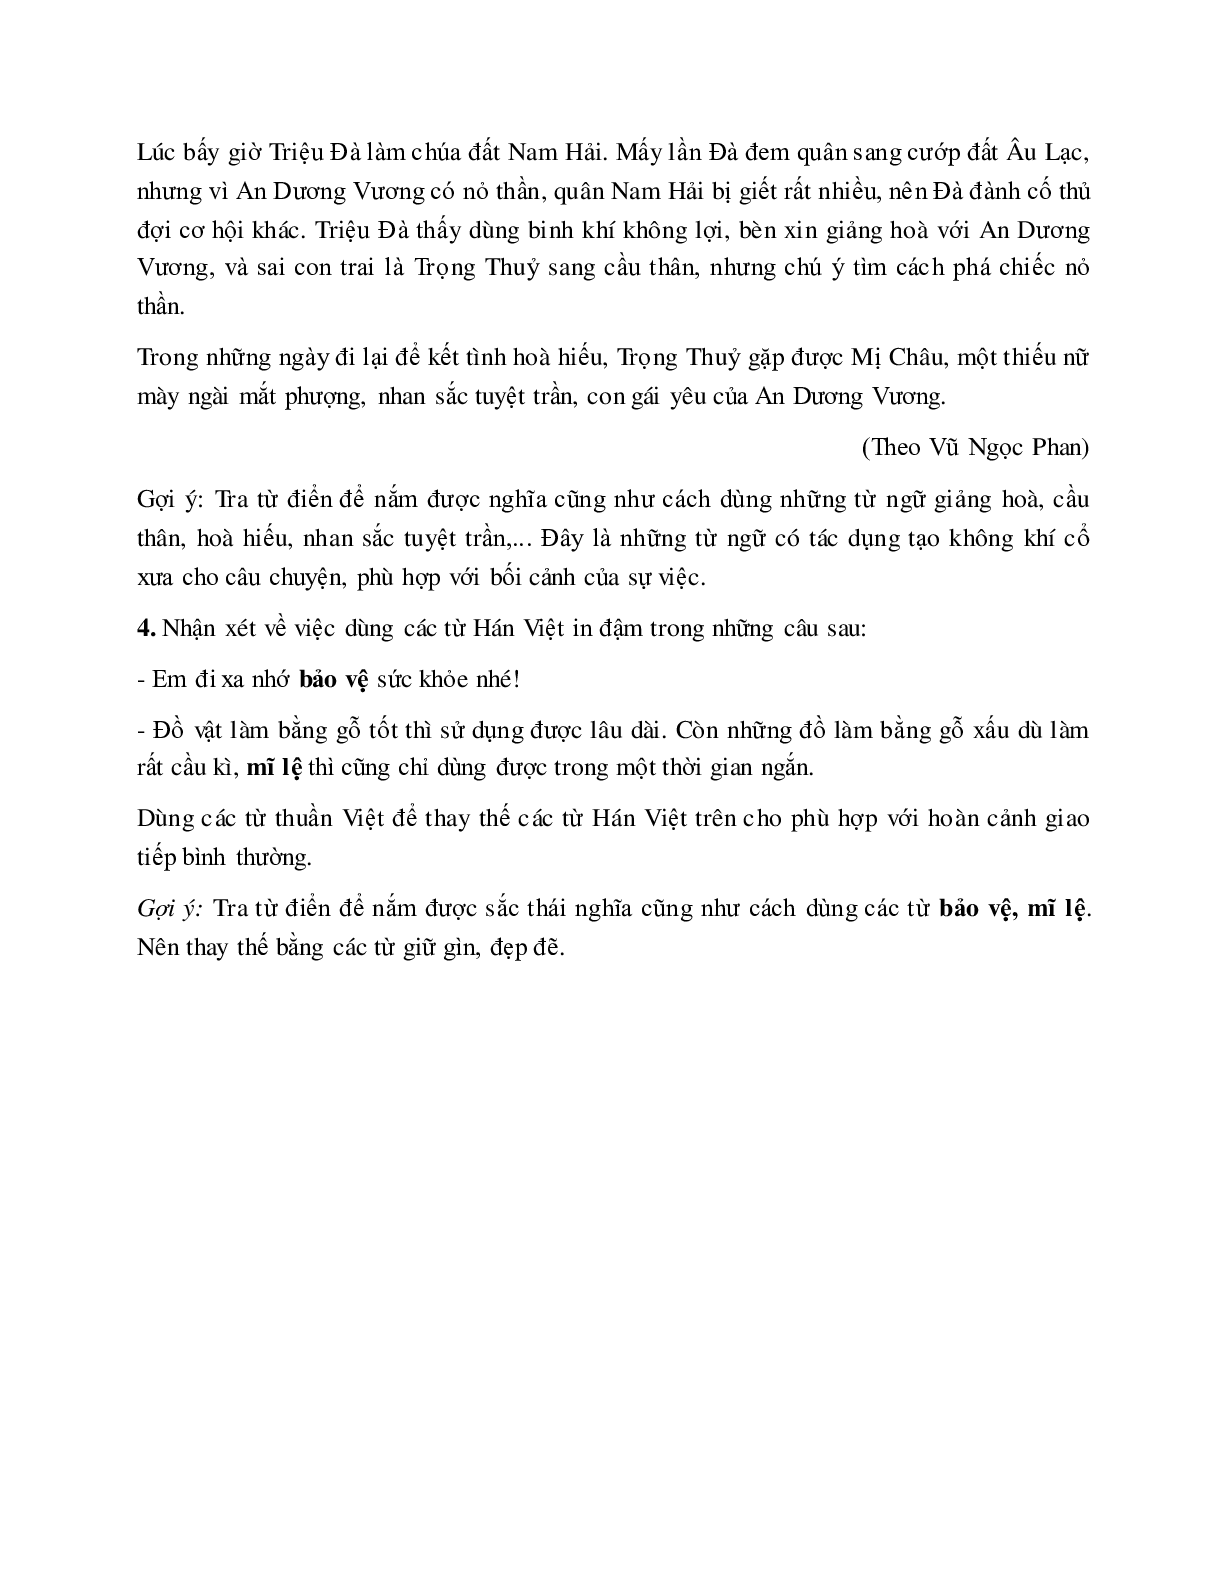 Soạn bài Từ Hán việt (tiếp theo) - ngắn nhất Soạn văn 7 (trang 5)